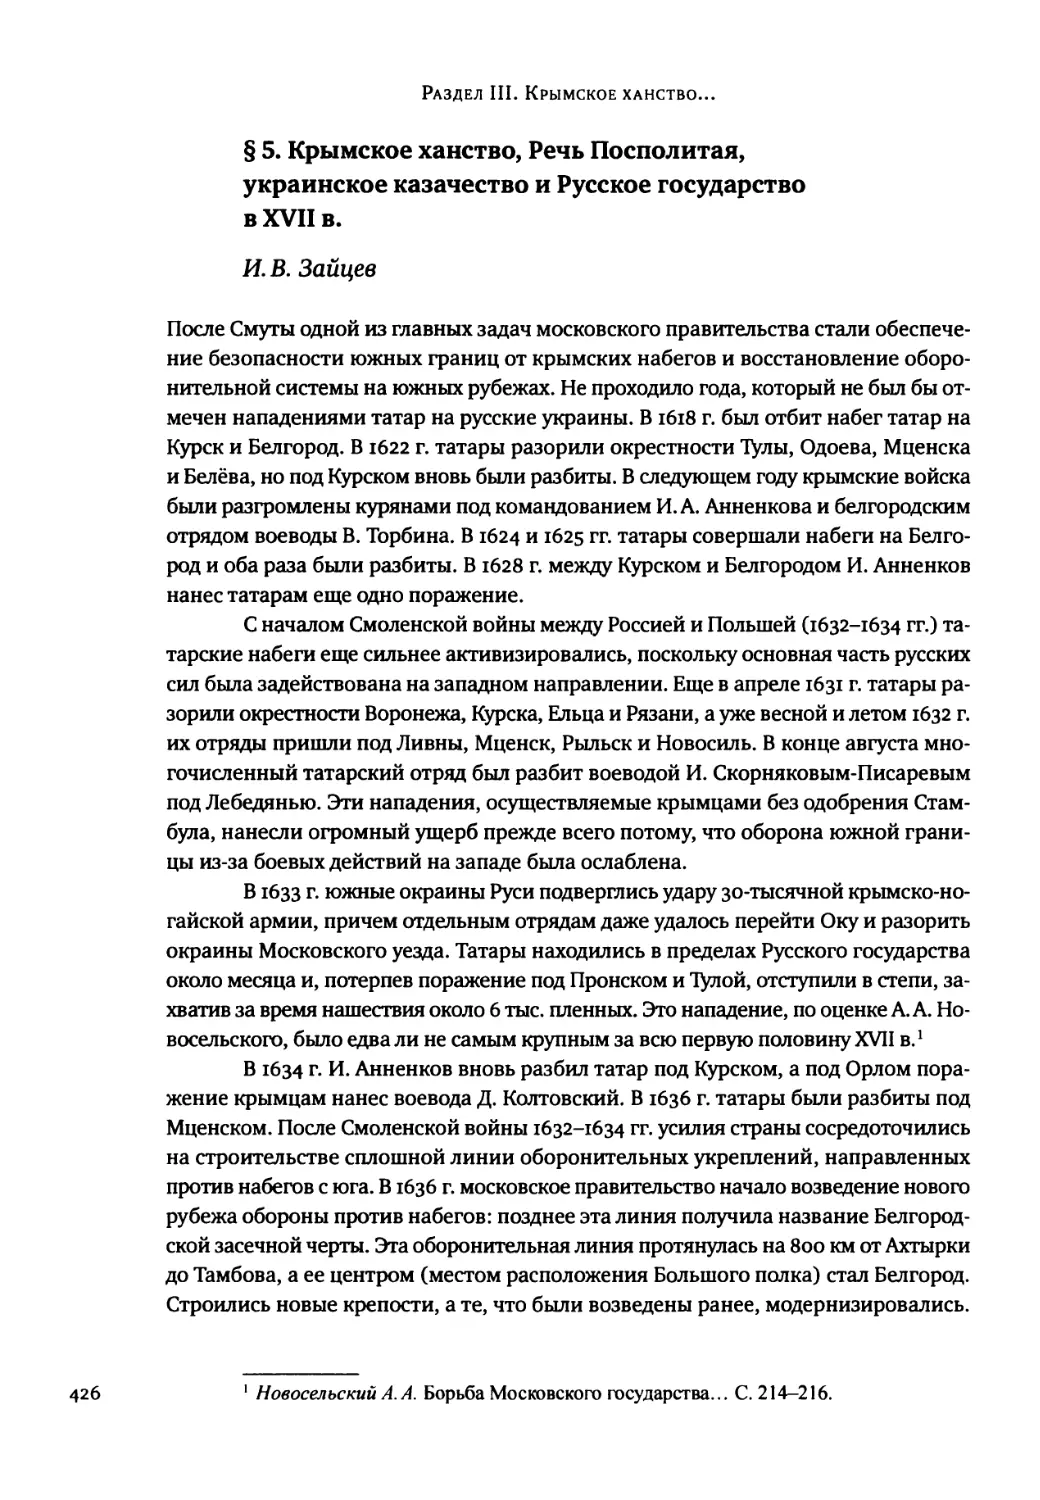 § 5. Крымское ханство, Речь Посполитая, украинское казачество и Русское государство в XVII в